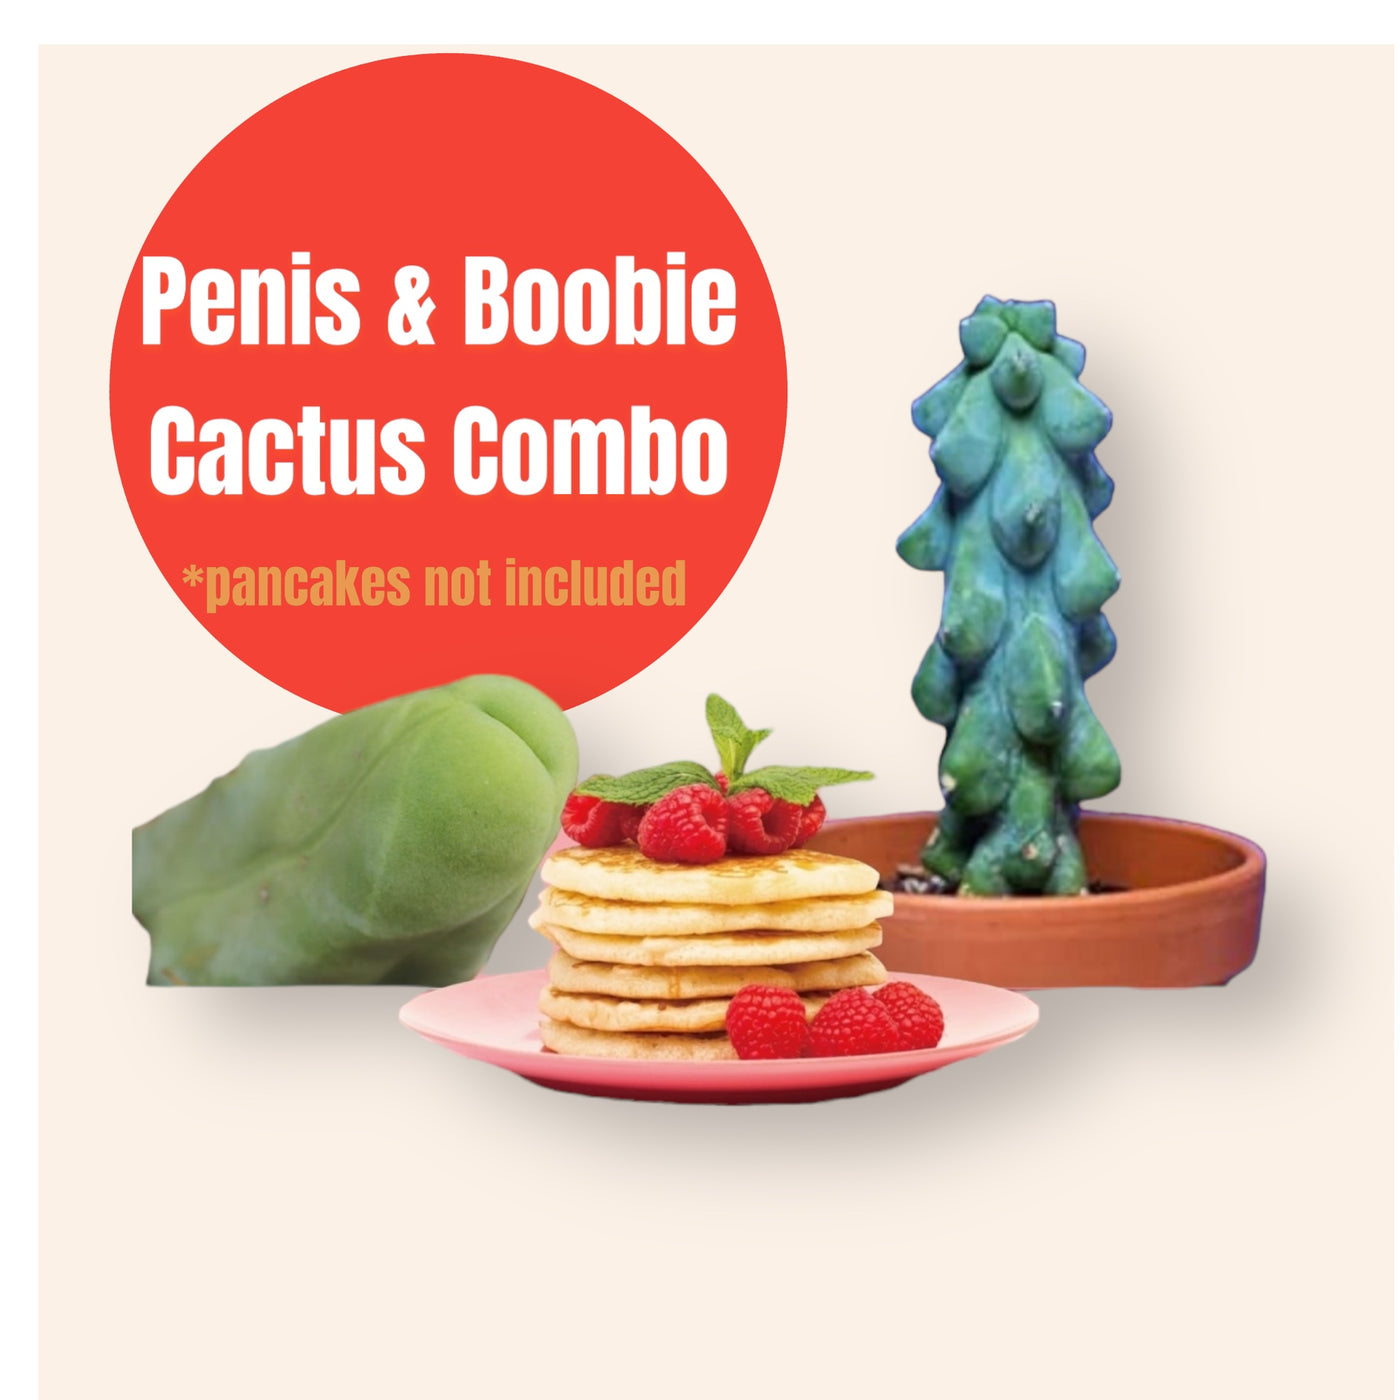 Boobie and Penis Cactus Combo